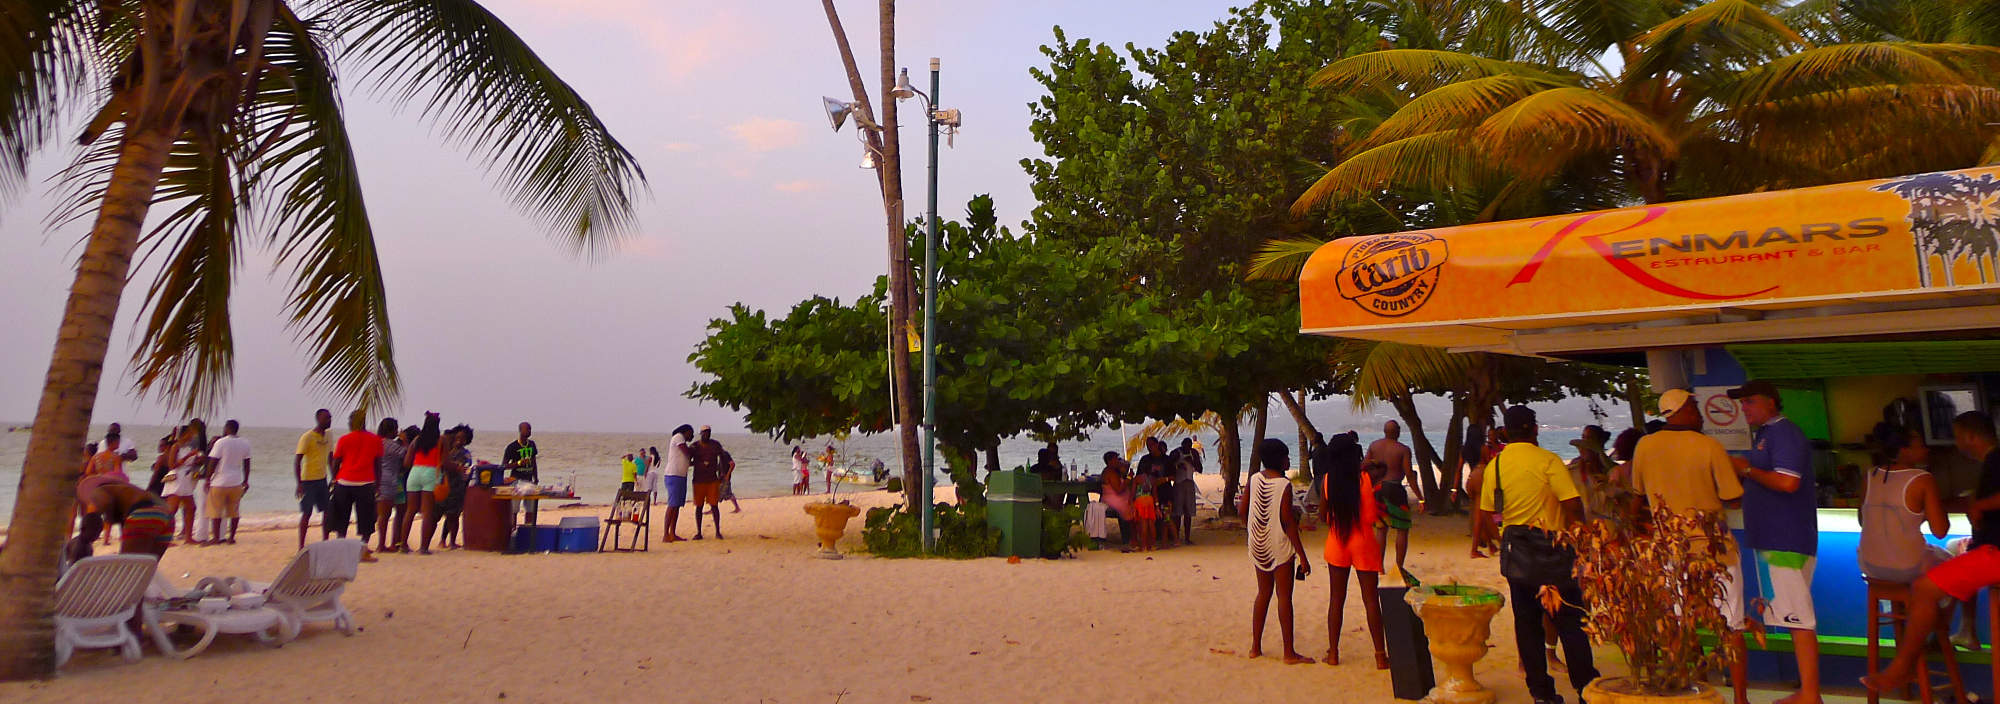 Trinidad und Tobago, Im Rhythmus des Calypso, Strandparty